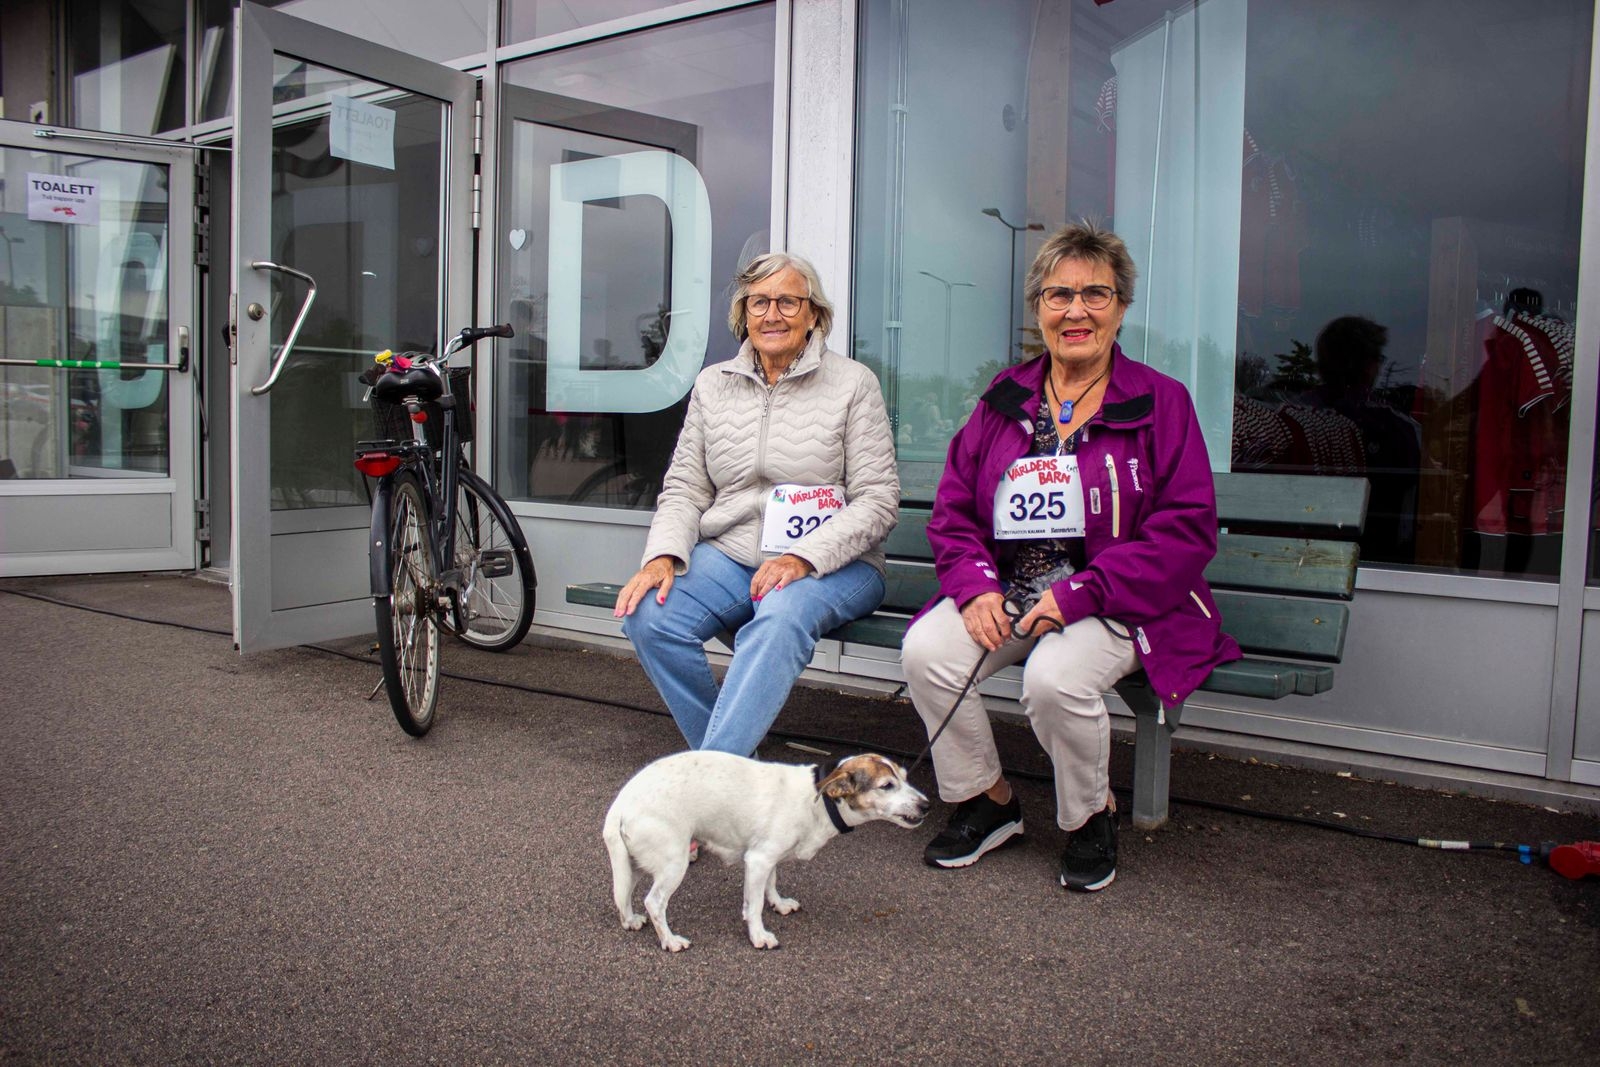 Kerstin Quist från Kalmar och Britt-Marie Engkvist från Böle gick loppet tillsammans med hunden Rally. – Vi tycker om att promenera, sen att det för en bra sak är bara bonus.